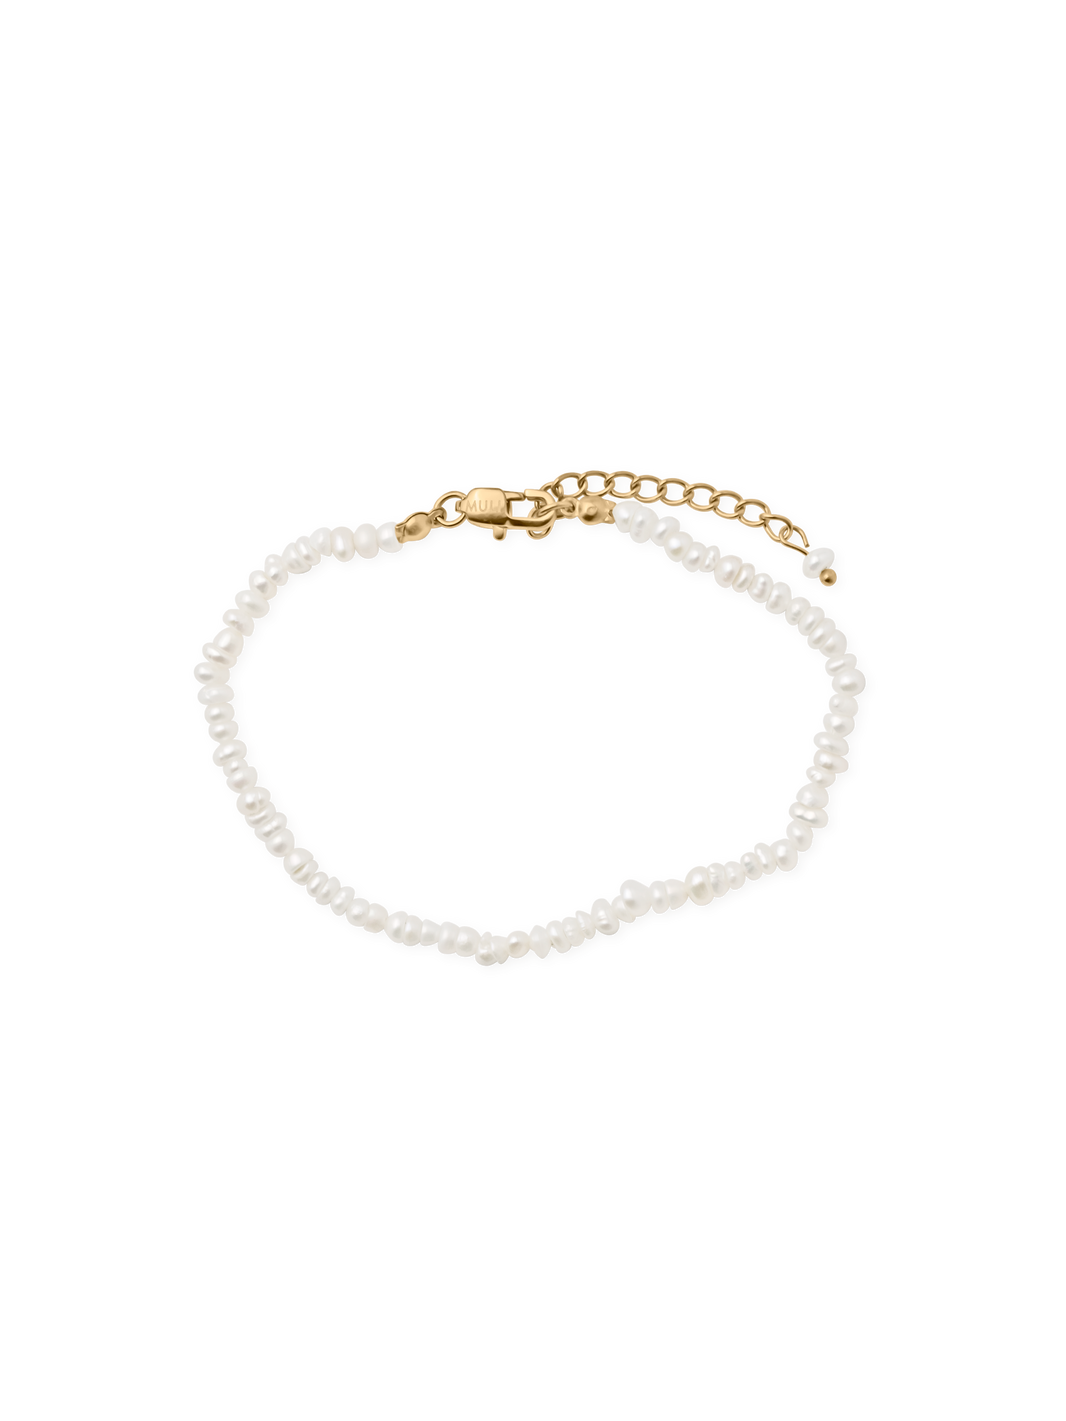 freshwater pearl bracelet gold